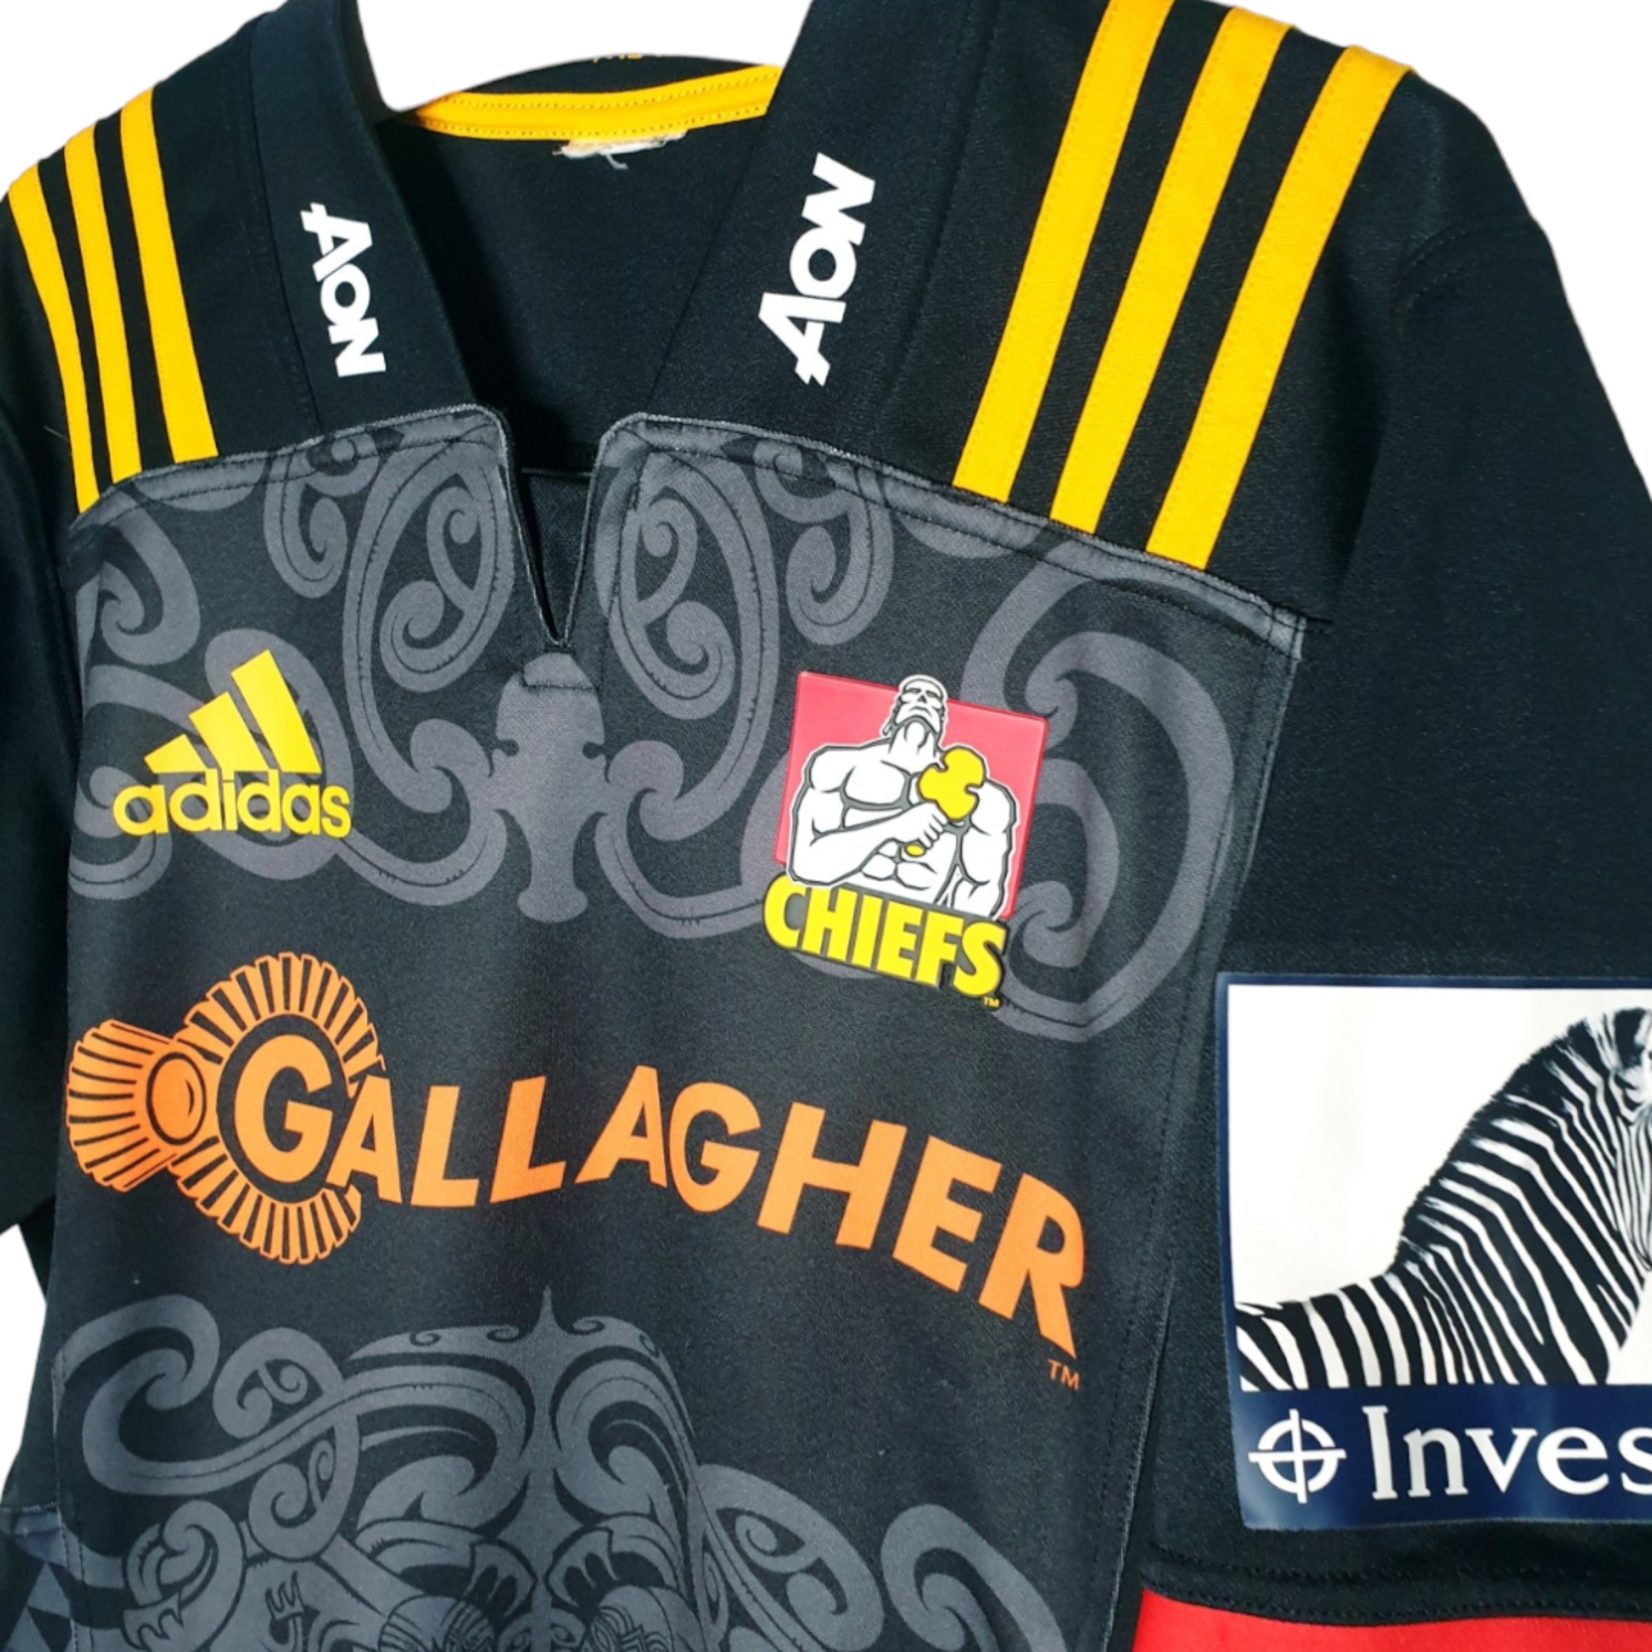 Adidas Origineel Adidas vintage rugby shirt Gallagher Chiefs 2018/19